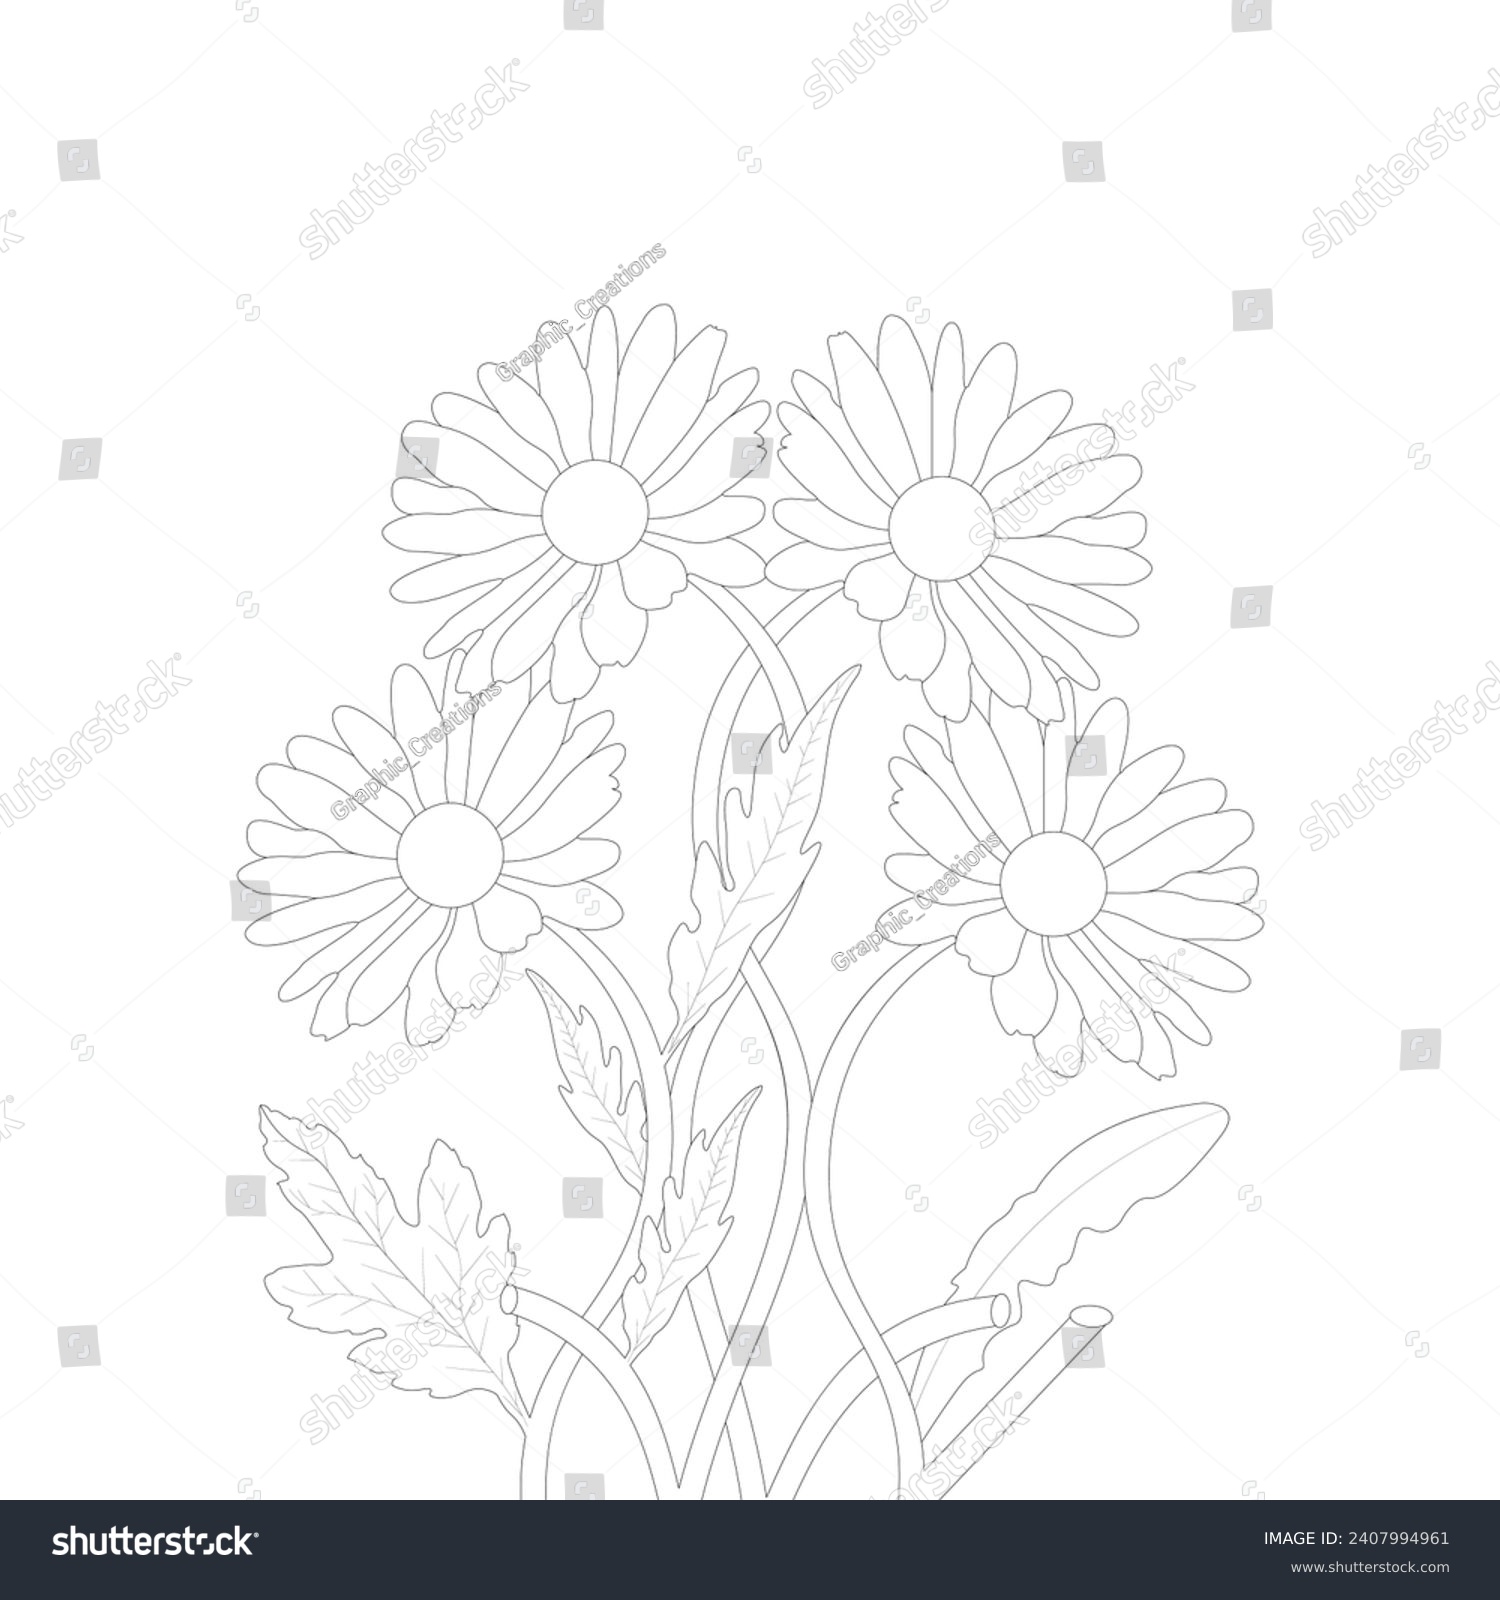 SVG of hand drawn daisy flower line art illustration vector svg